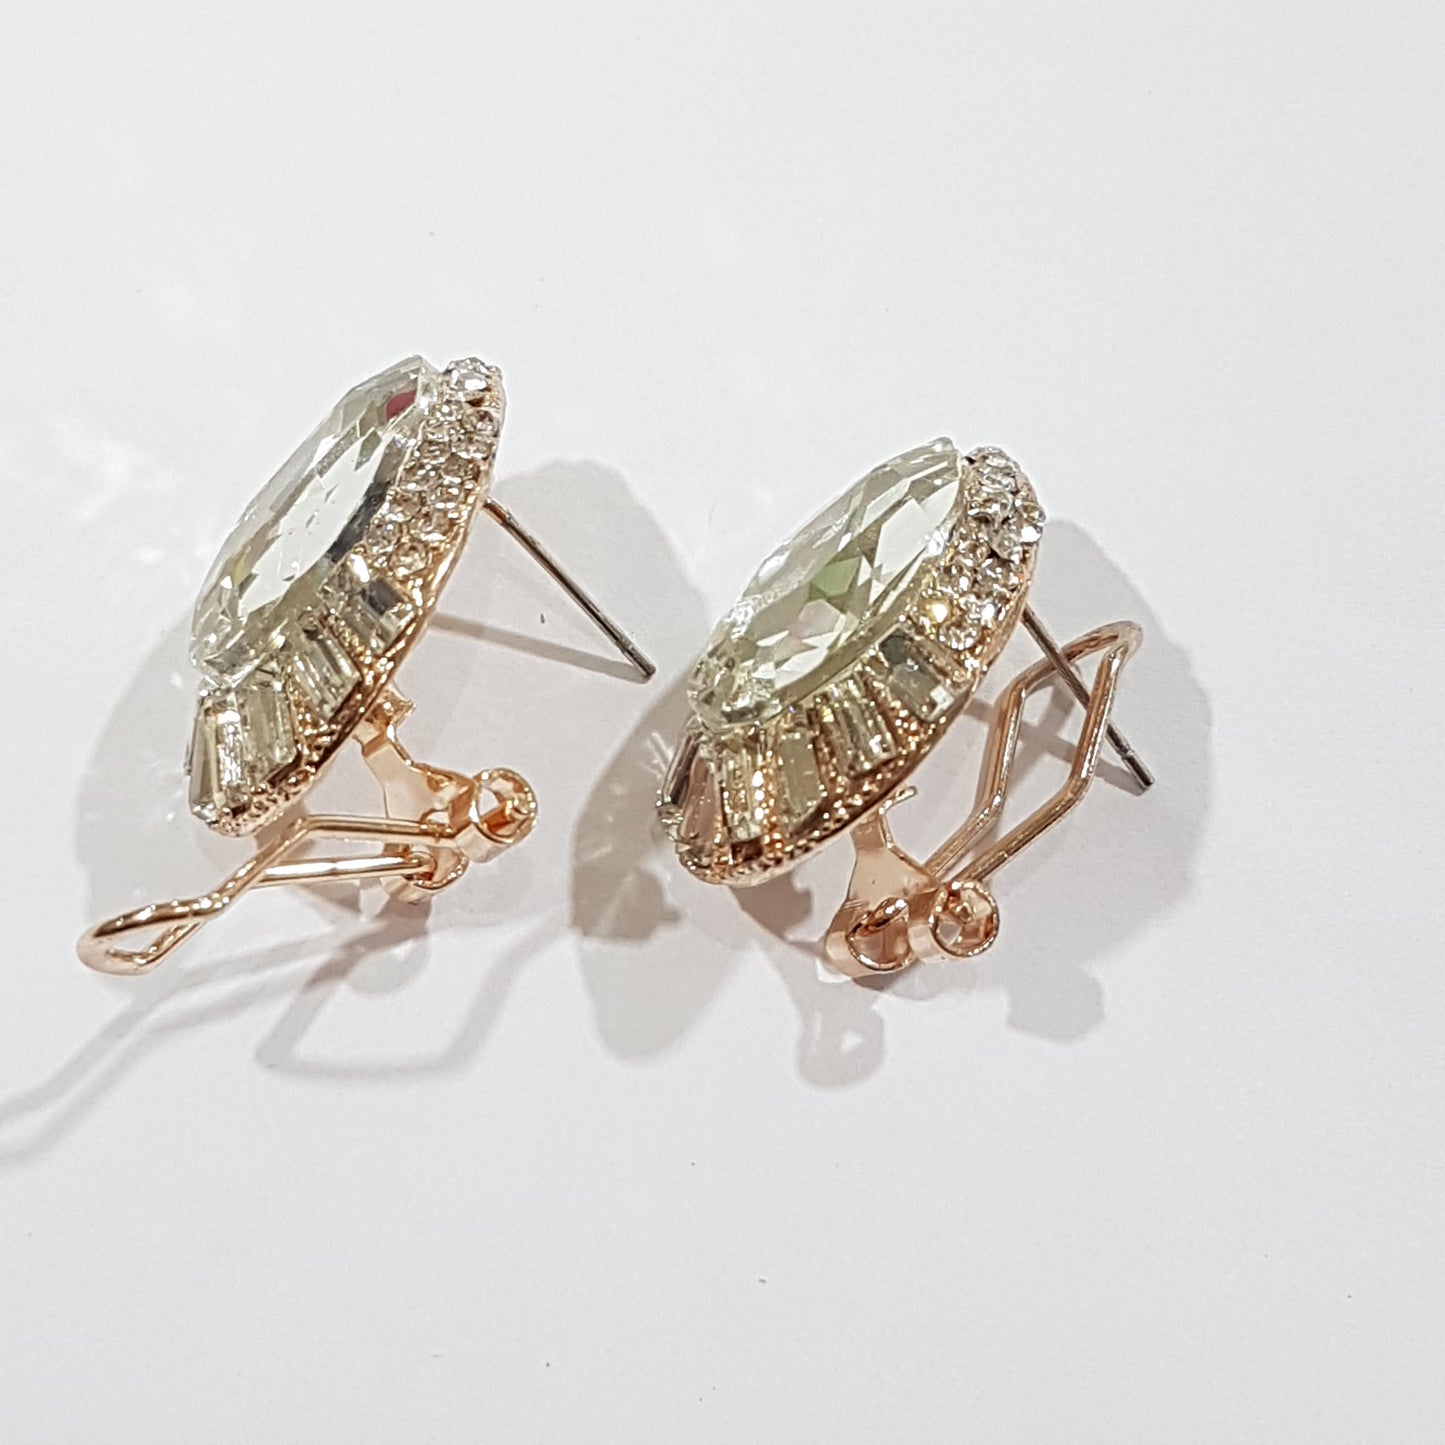 Pearl and Rhinestone Round Earrings